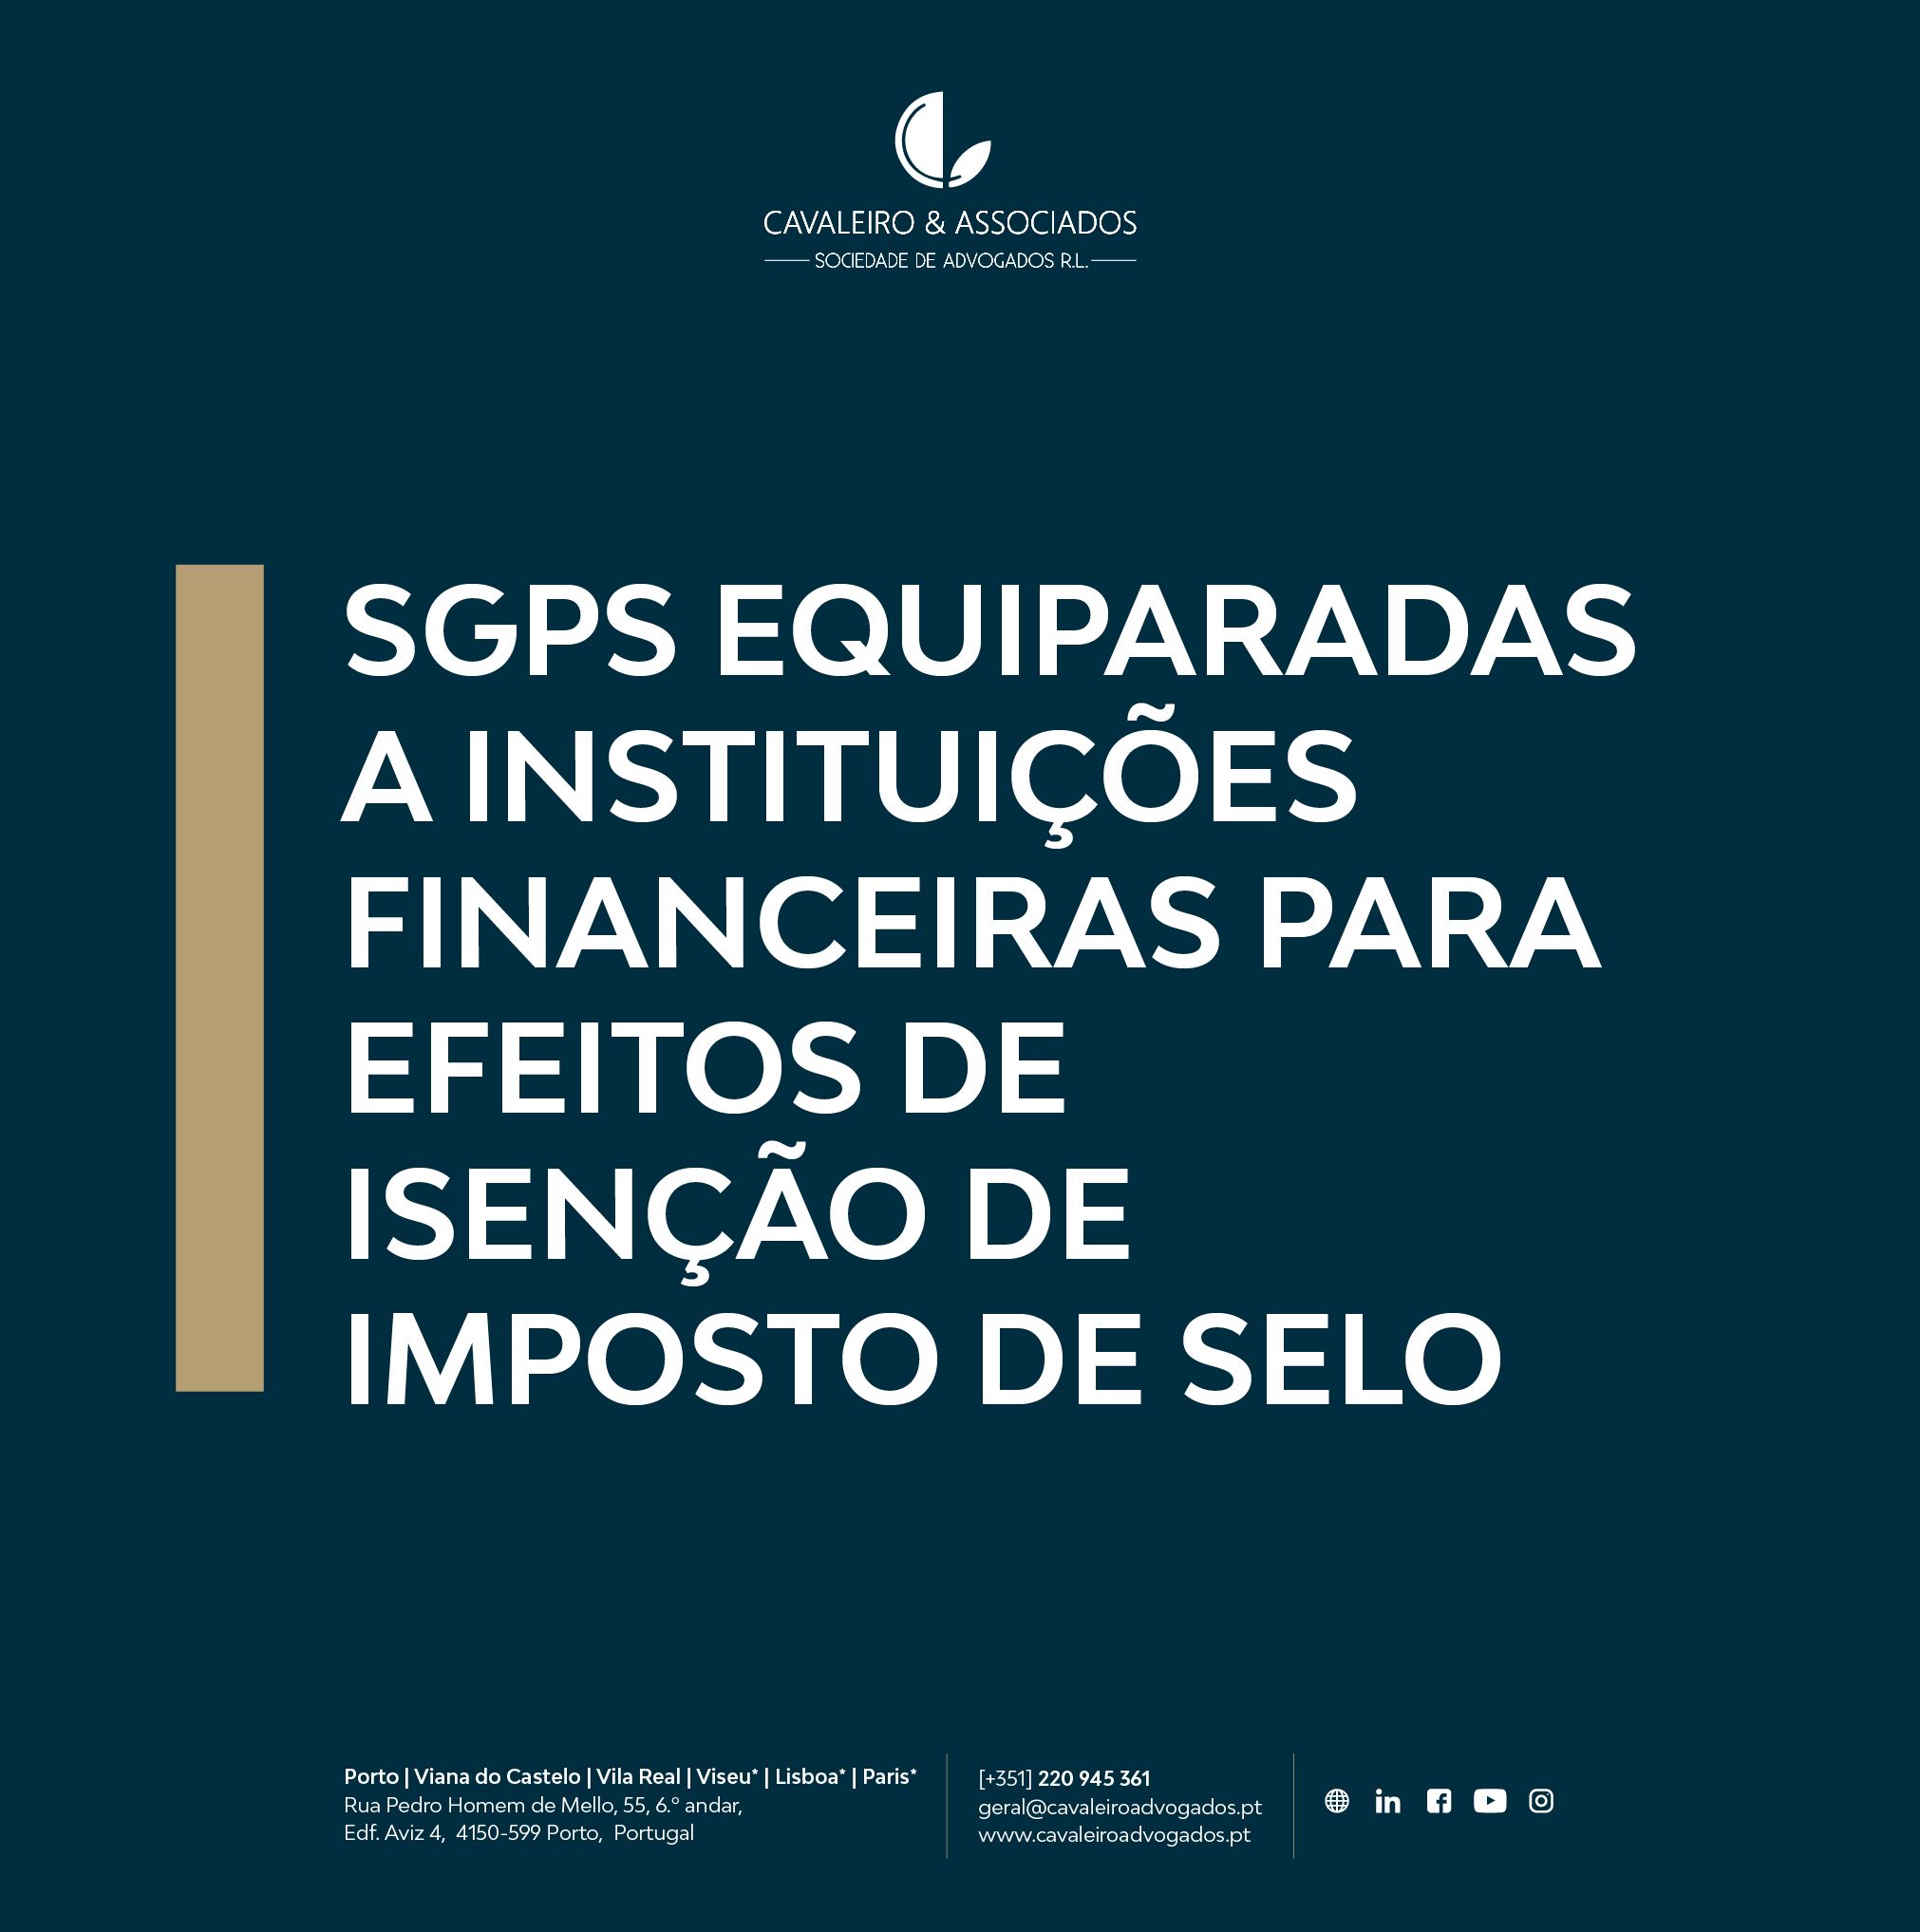 SGPS EQUIPARADAS A INSTITUIÇÕES FINANCEIRAS PARA EFEITOS DE ISENÇÃO DE IMPOSTO DE SELO